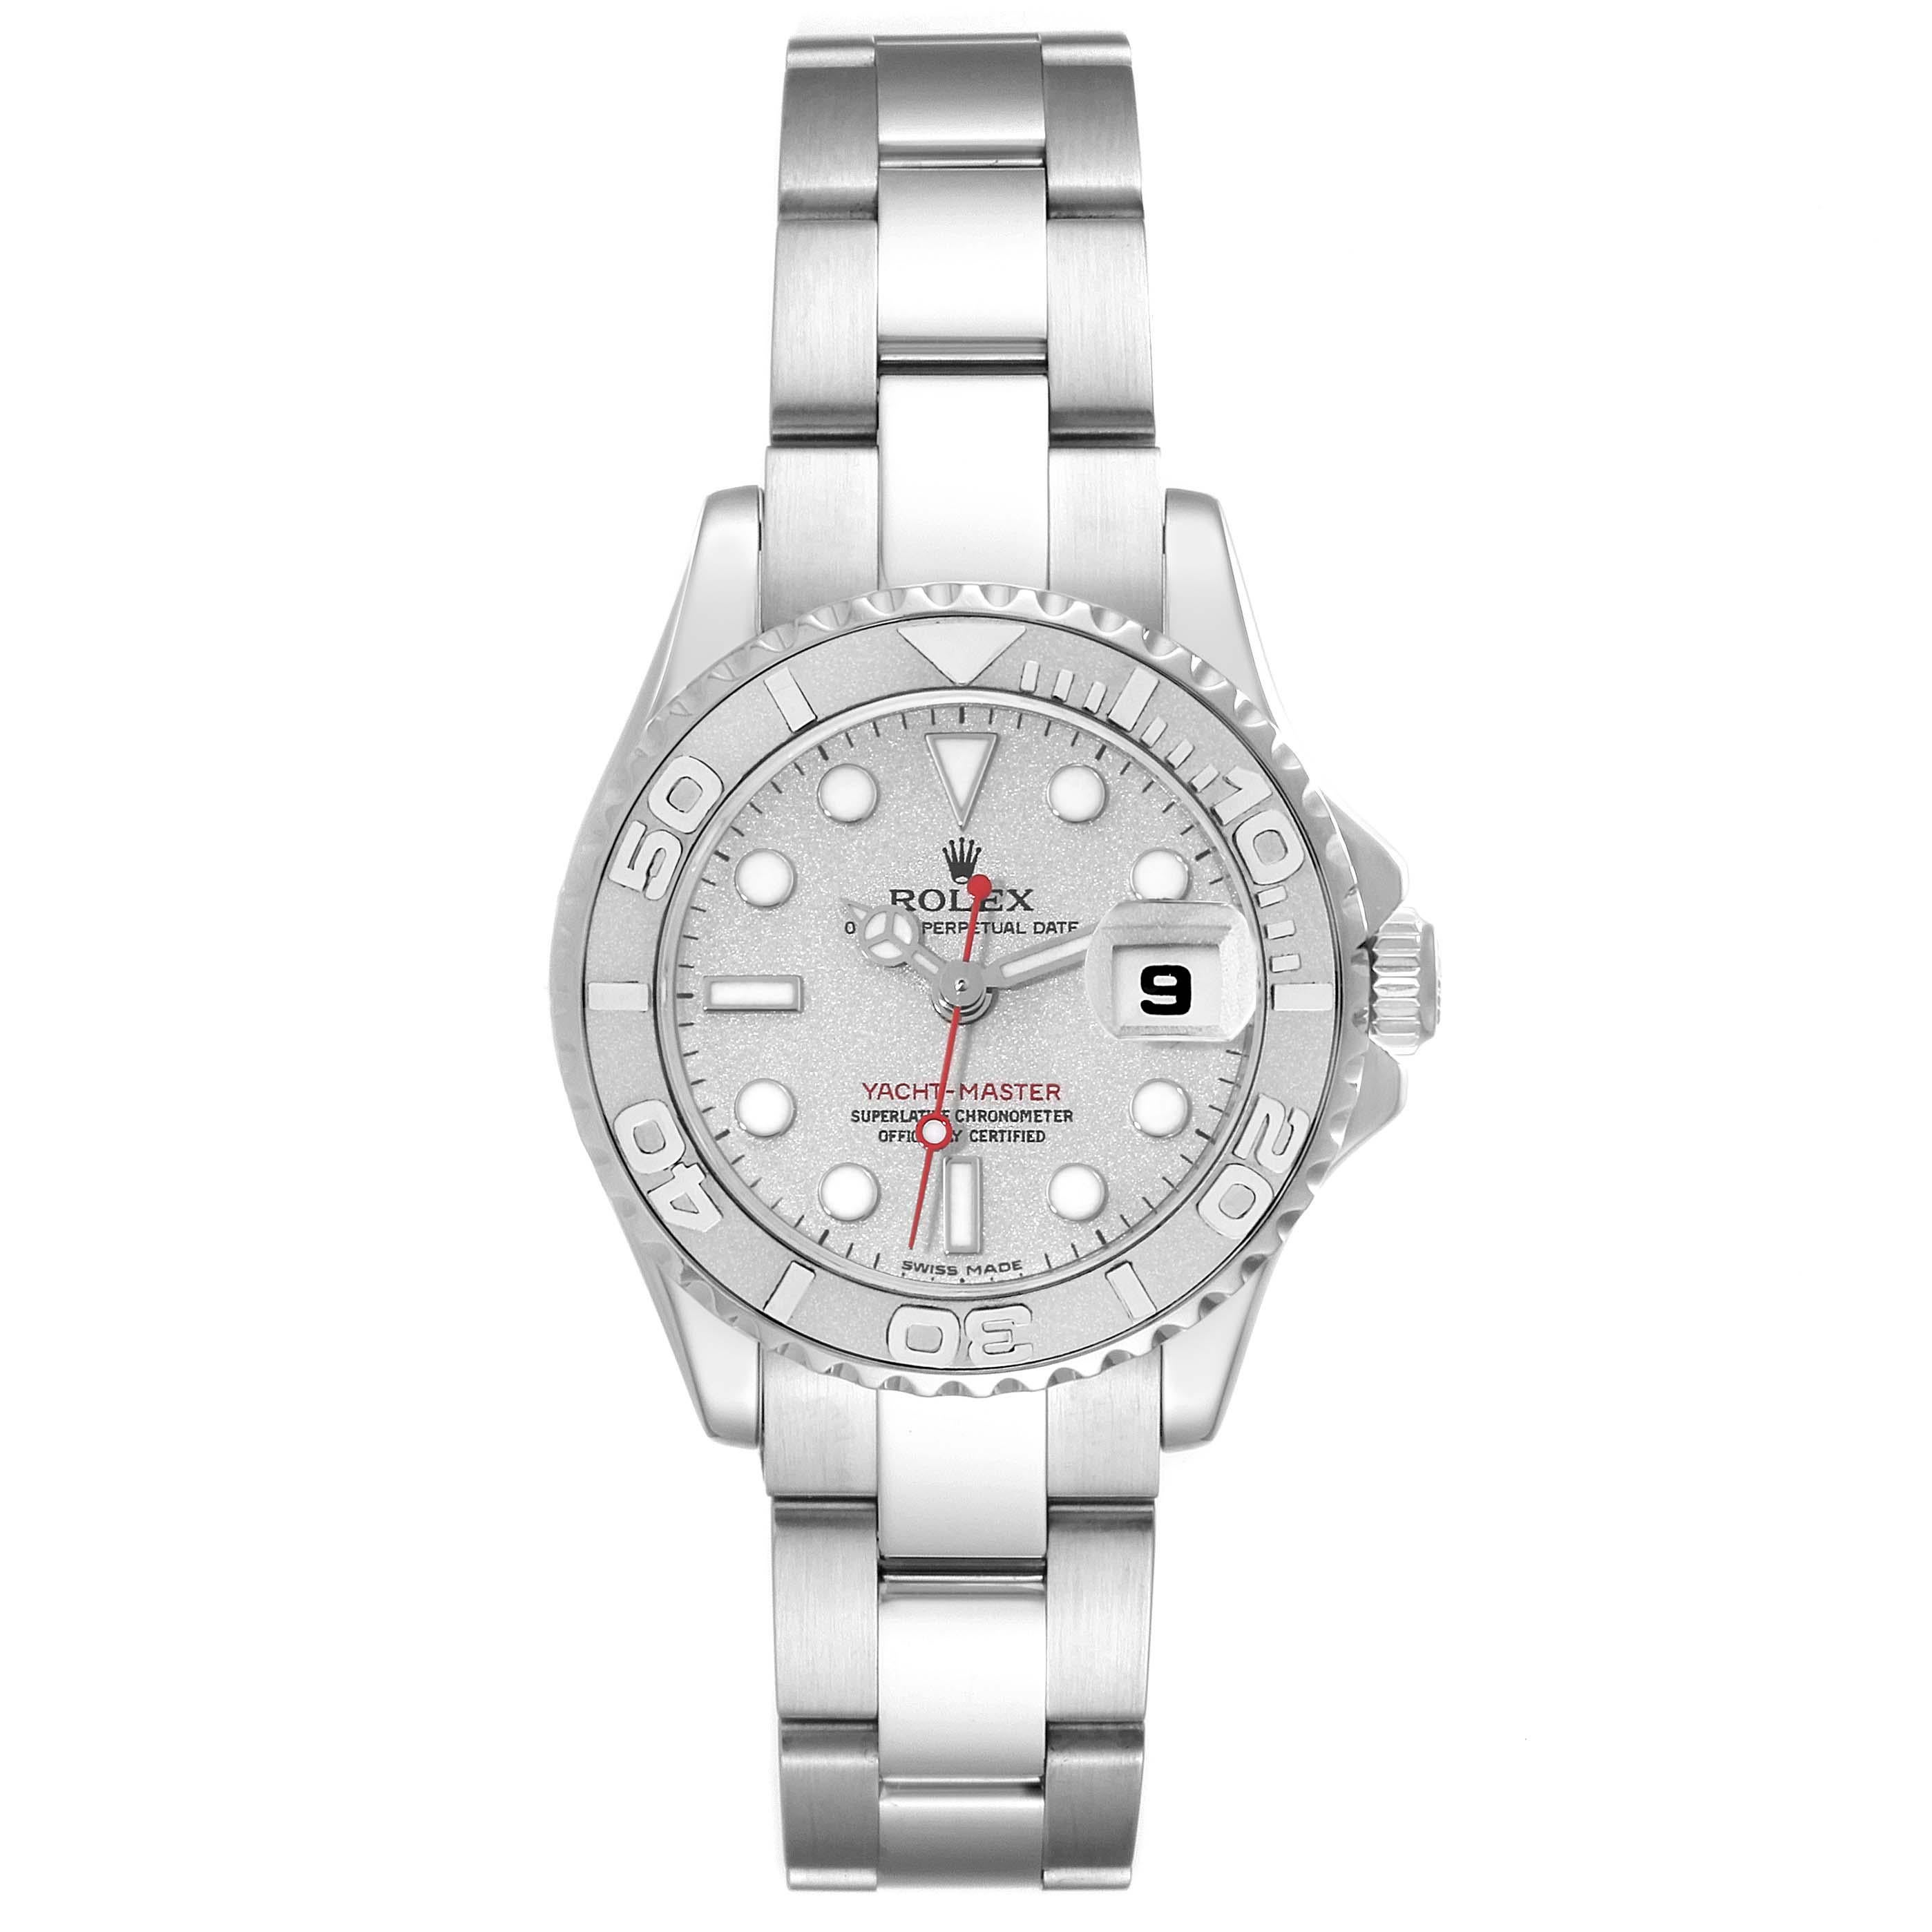 Rolex Yachtmaster 29 Steel Platinum Dial Bezel Ladies Watch 169622. Mouvement automatique à remontage automatique, officiellement certifié chronomètre. Boîtier en acier inoxydable de 29 mm de diamètre. Logo Rolex sur la couronne. Lunette tournante